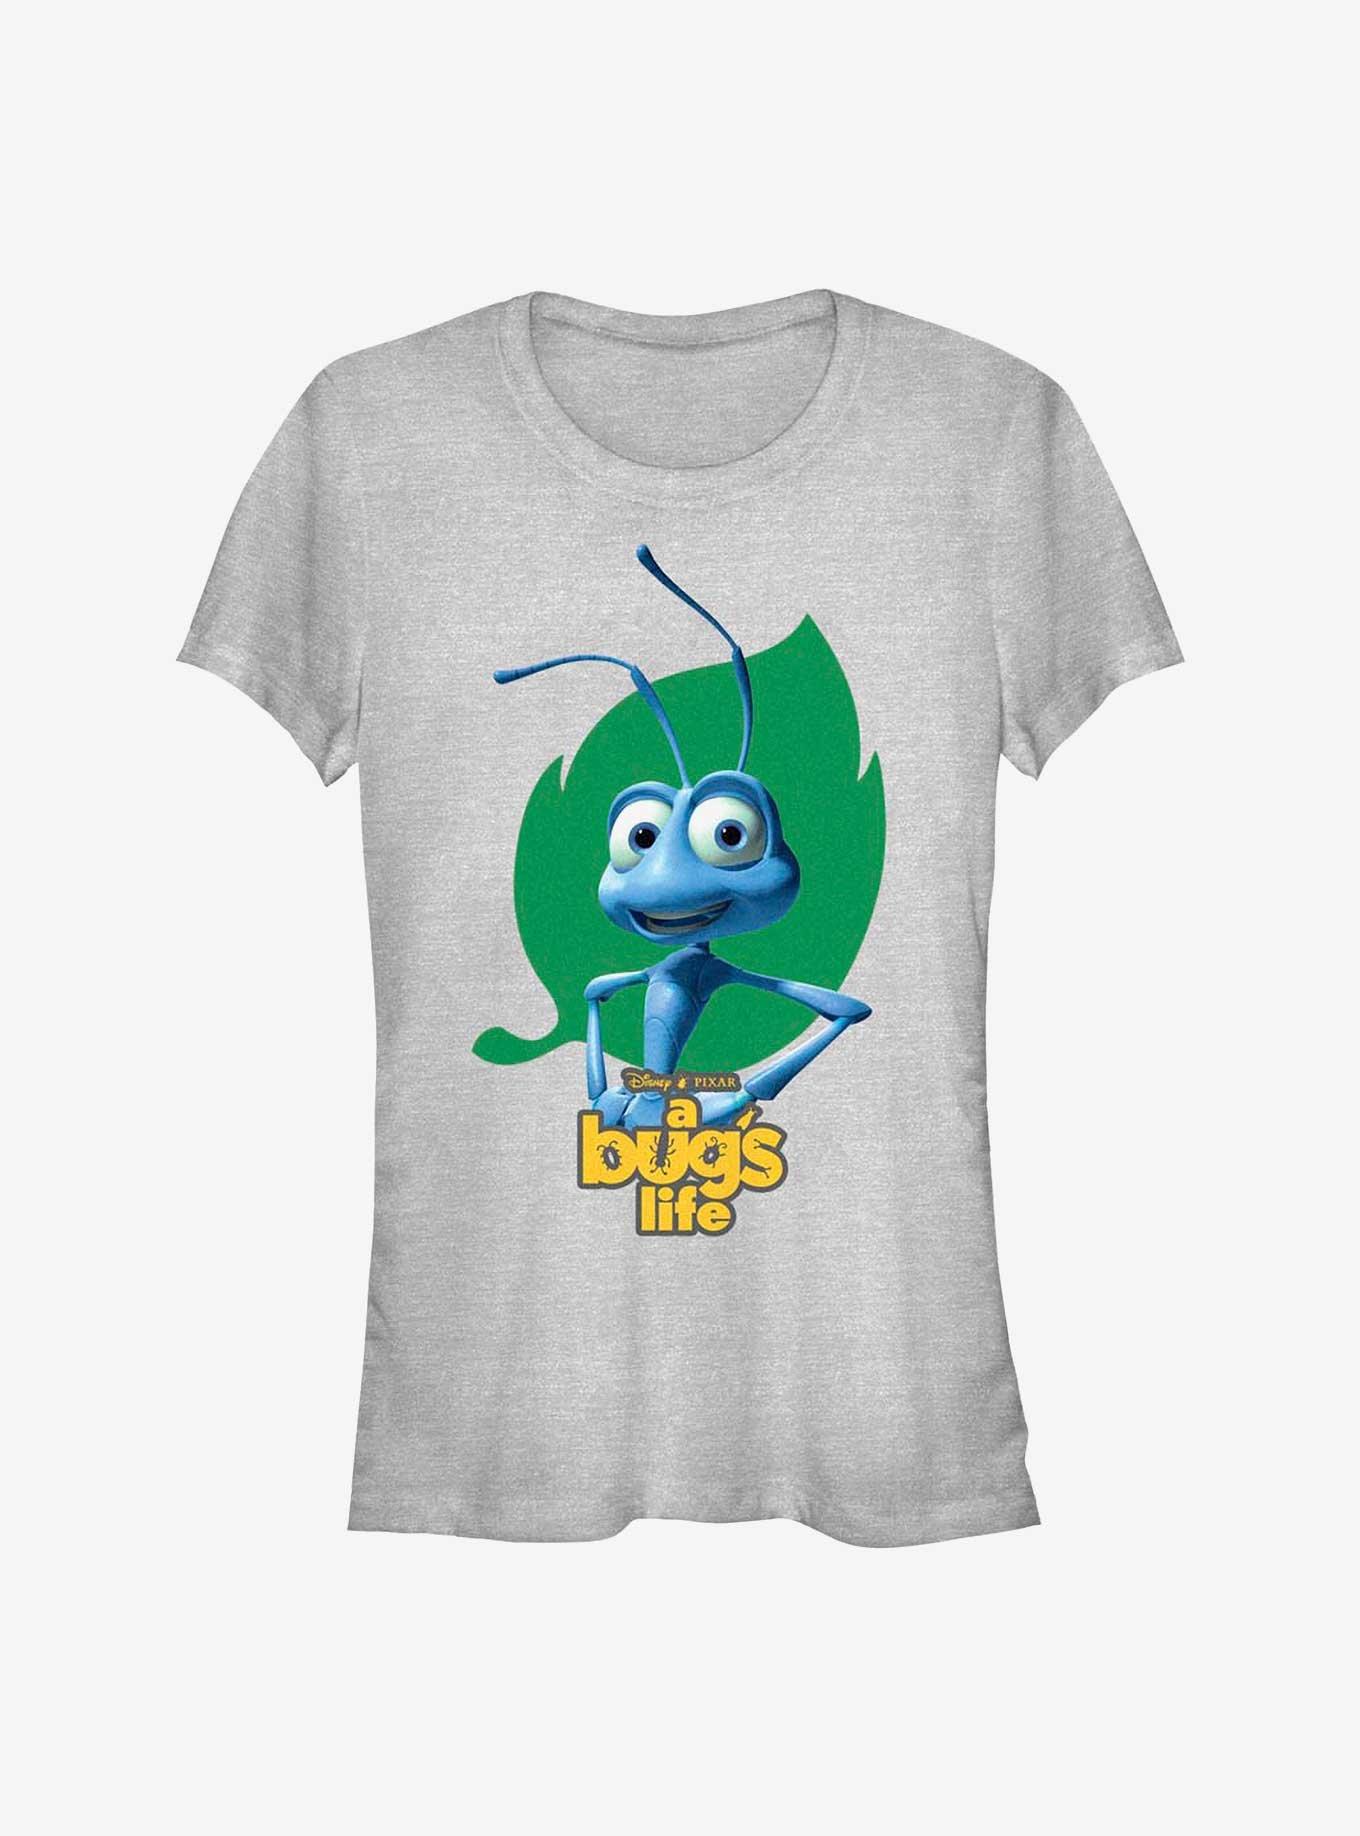 Disney Pixar A Bug's Life Flik Hips Girls T-Shirt